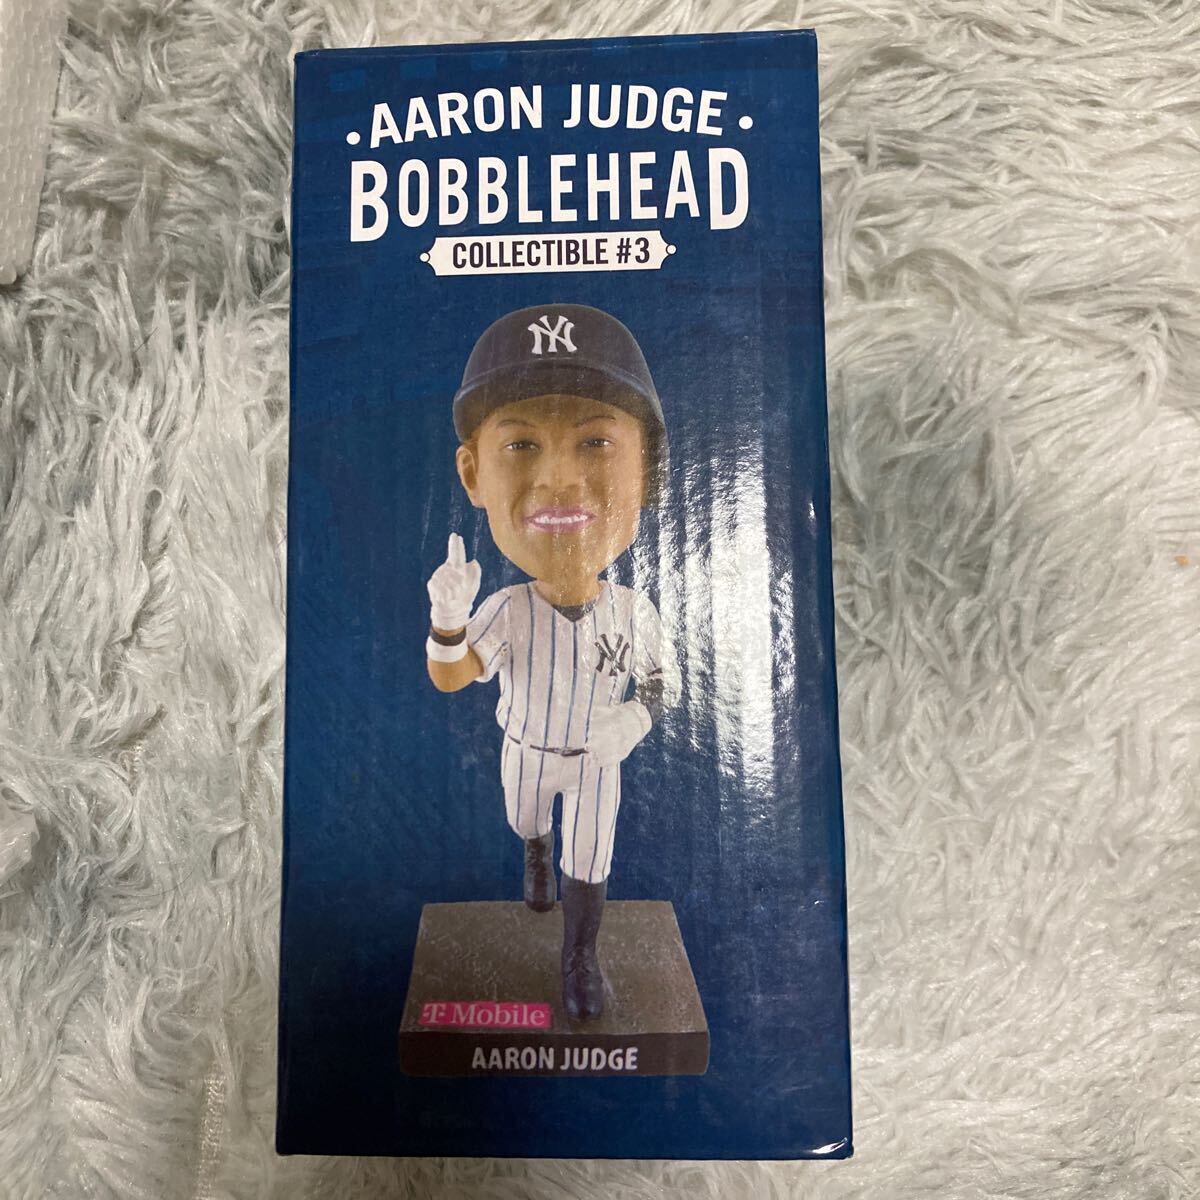 ボブルヘッド Aaron Judge アーロン ジャッジ ヤンキース 球場配布 bobblehead Yankees